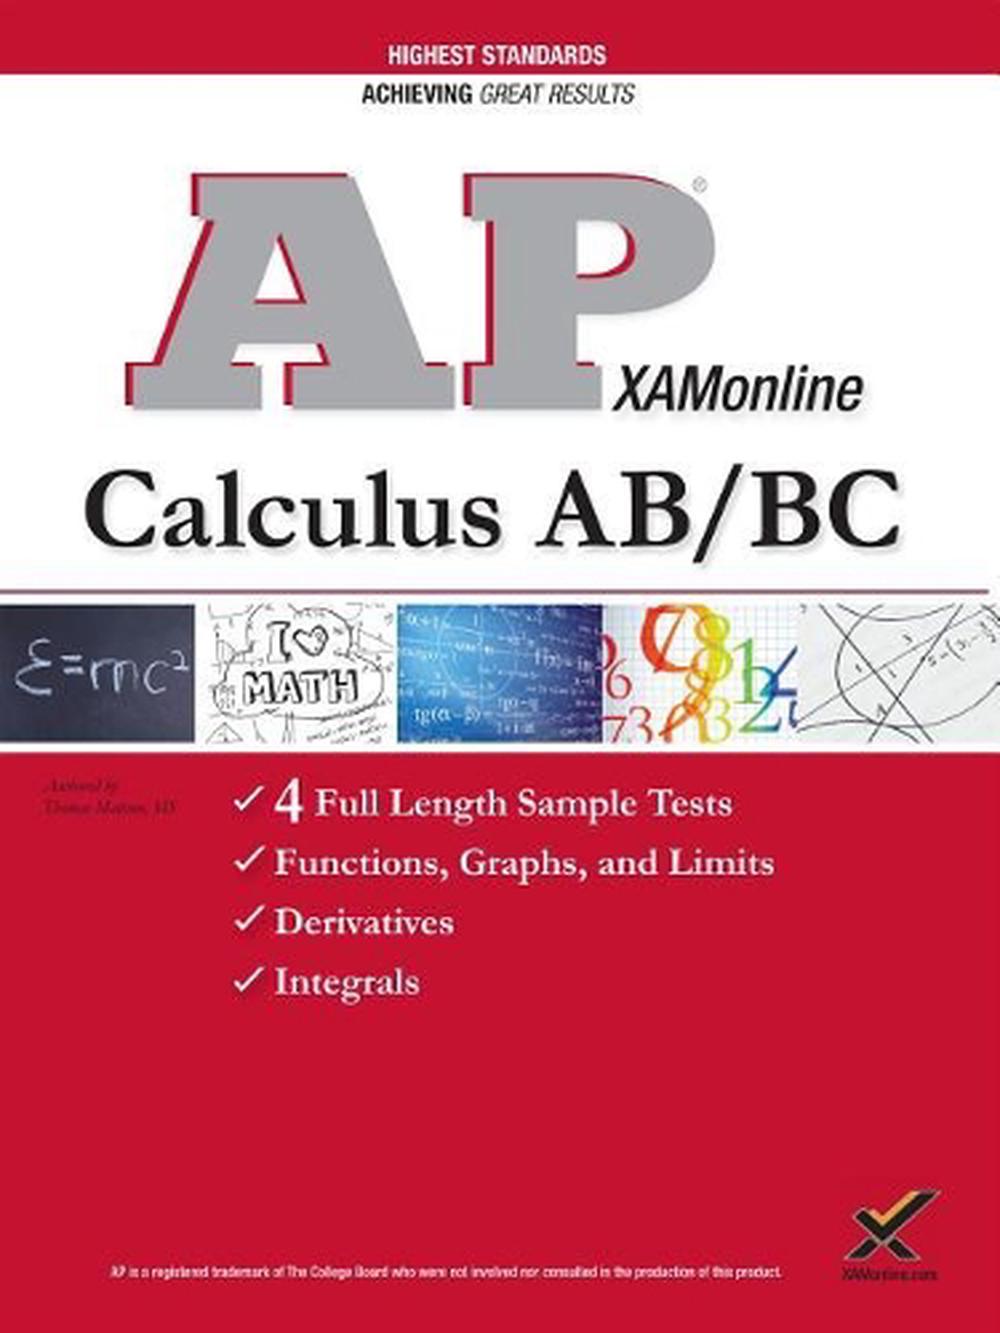 ap calculus ab 2014